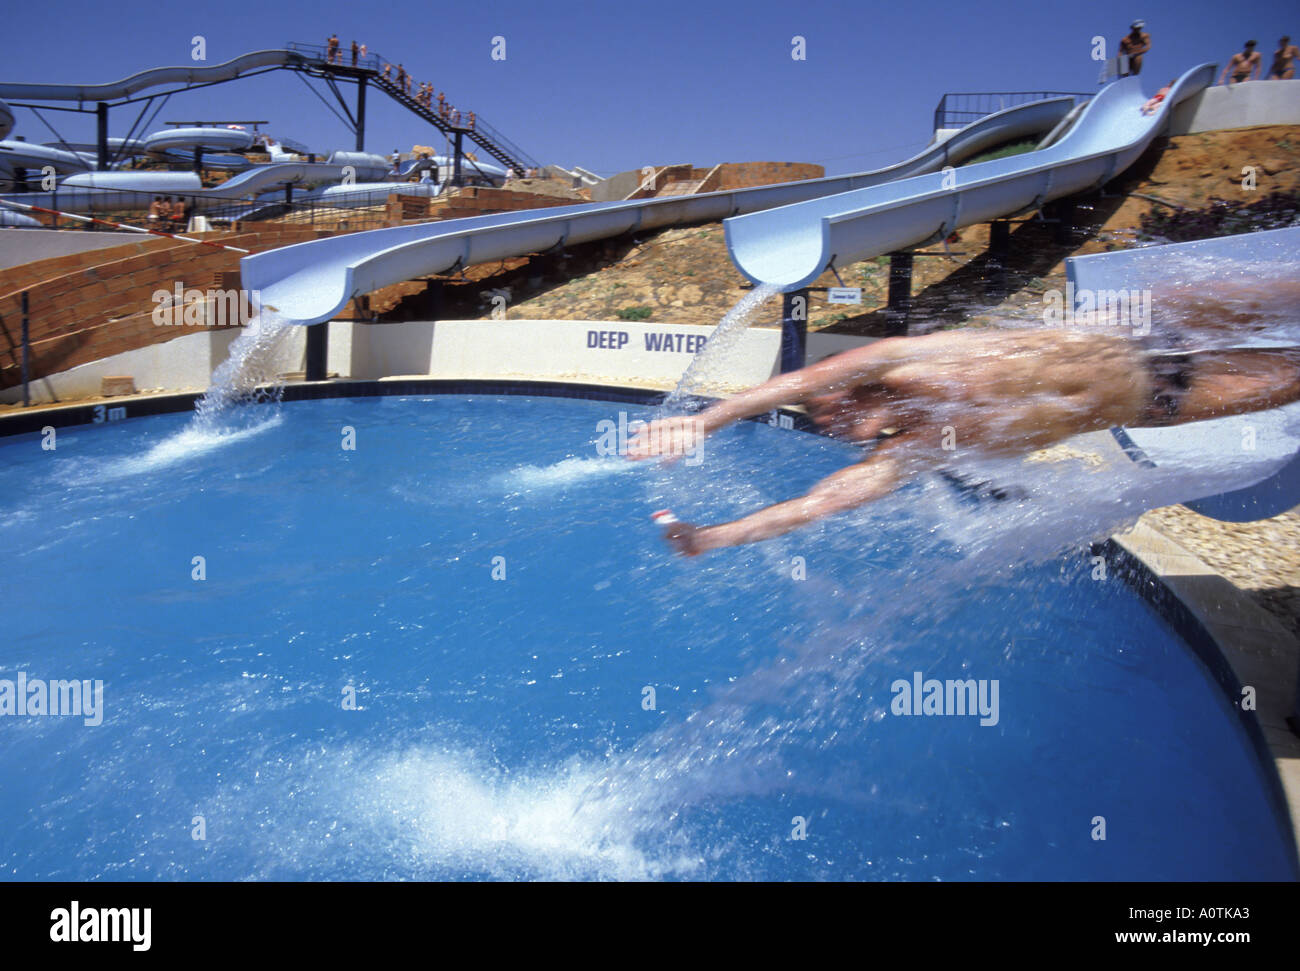 Urlaubsbesucher der Algarve Portugal im Wasserpark Motion Blur Teenager rutscht bei Geschwindigkeit von der Wasserrutsche herunter Hauptthema ist nur durch die Modellveröffentlichung abgedeckt Stockfoto